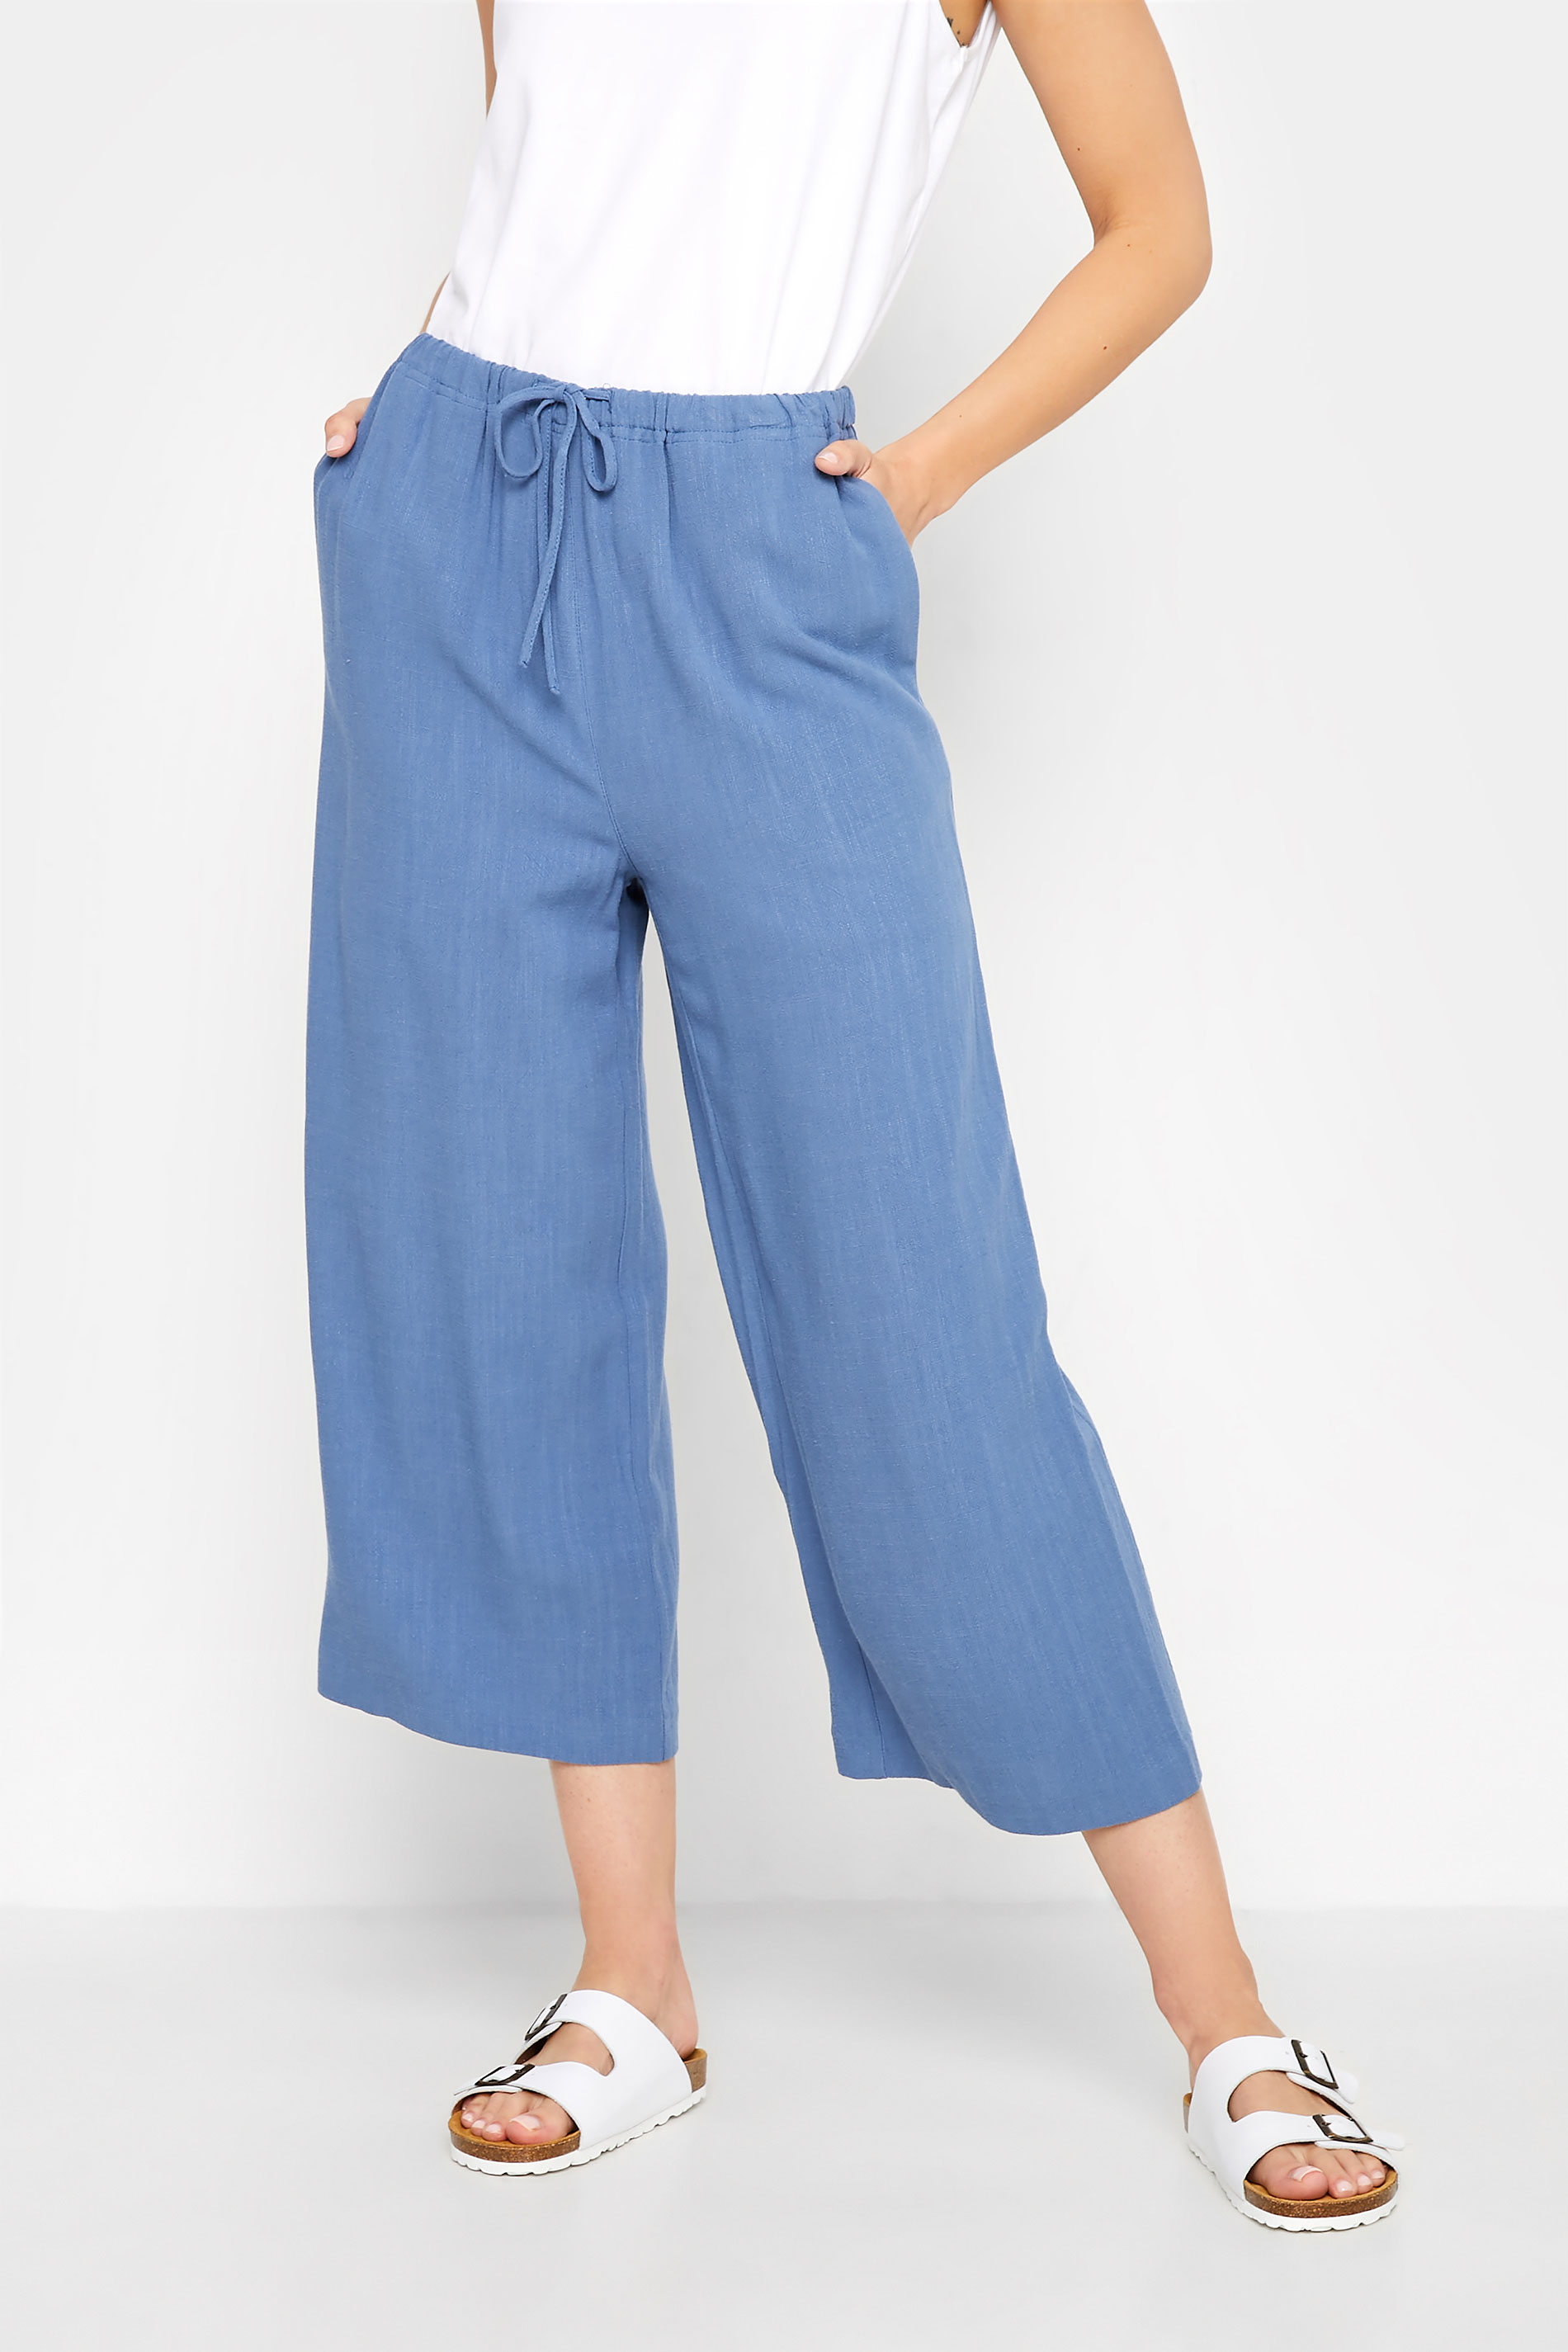 LTS Tall Women's Blue Linen Blend Cropped Trousers | Long Tall Sally  1